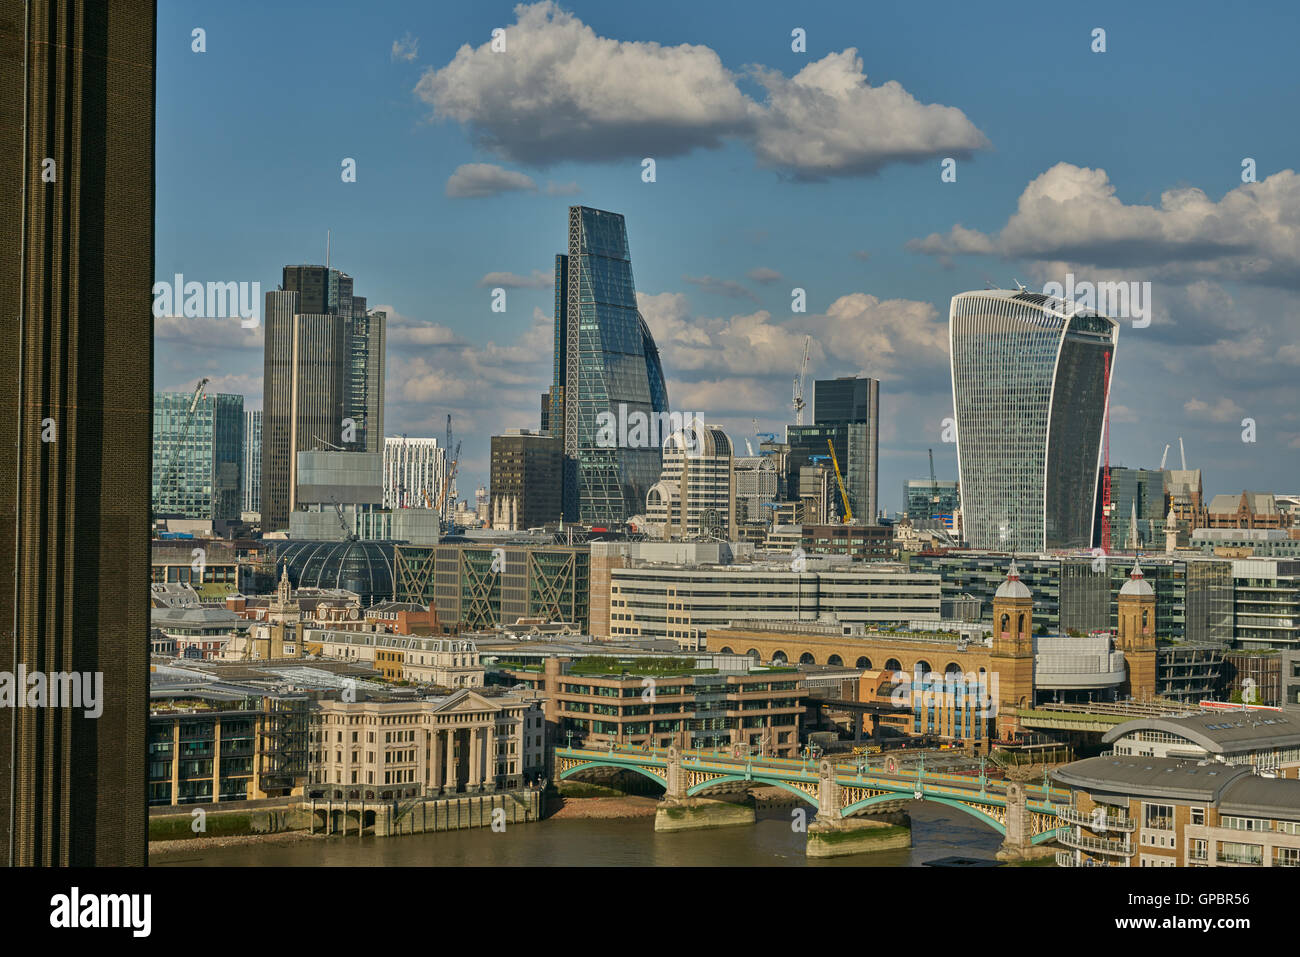 City of London skyline, londinese di grattacieli, edifici alti, nel distretto finanziario londinese Foto Stock